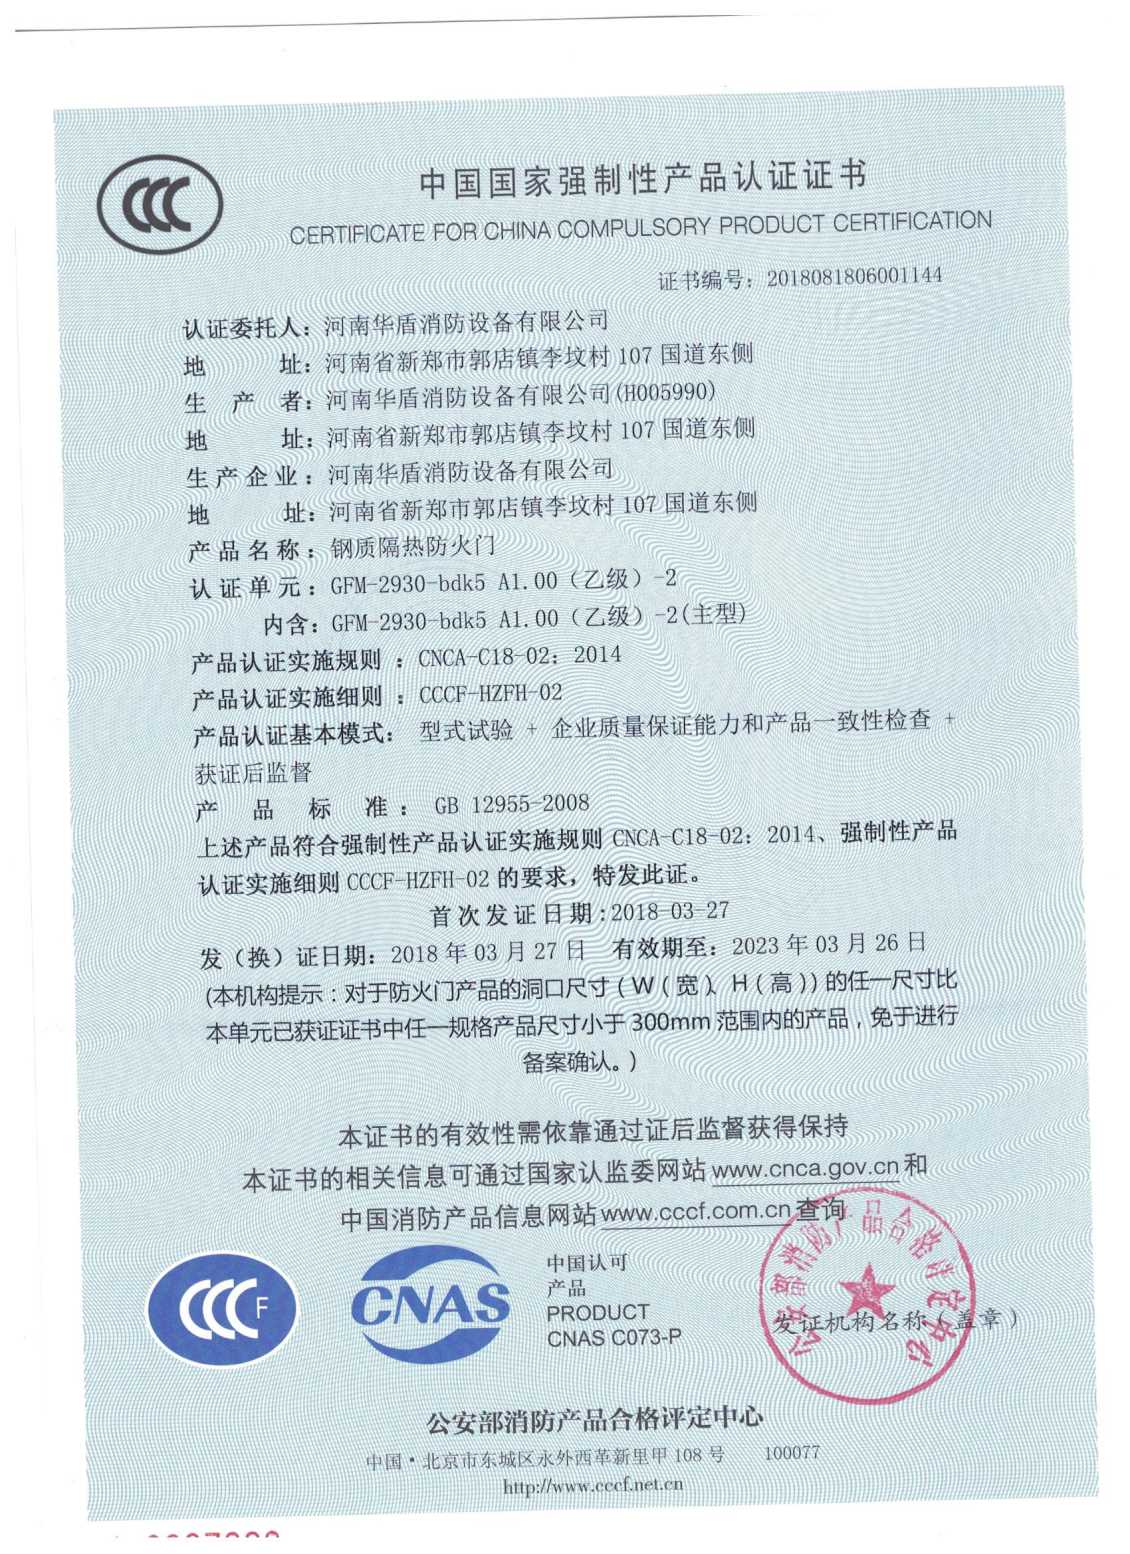 陕西超大防火门-3C证书/检验报告